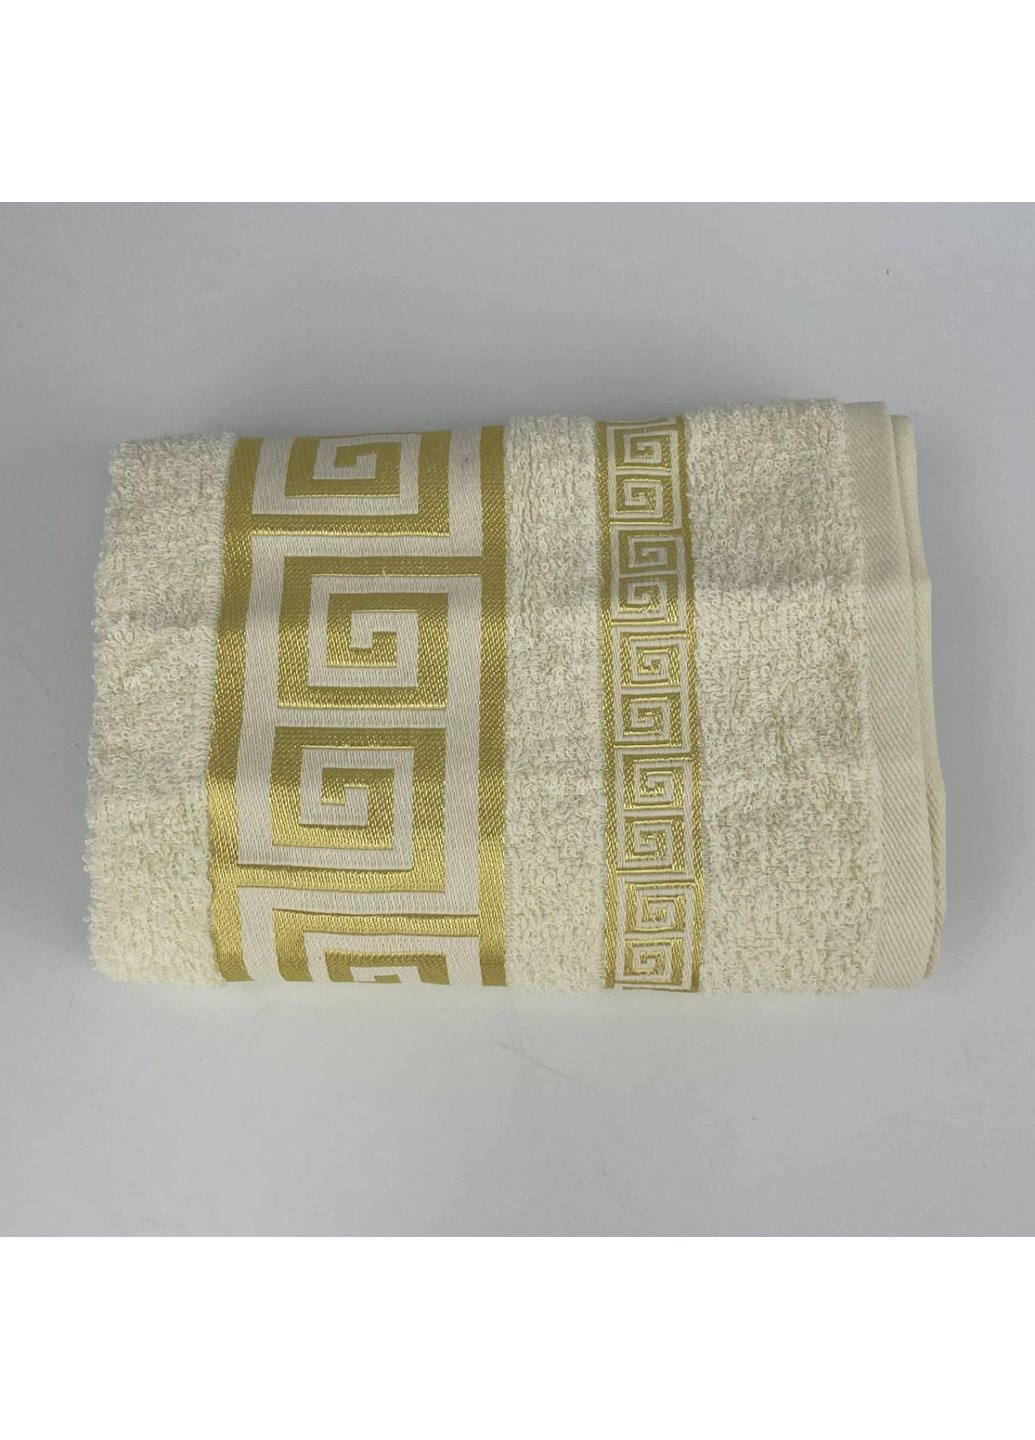 Power полотенце для лица махровое febo vip cotton grek турция 6388 молочное 50х90 см комбинированный производство - Турция